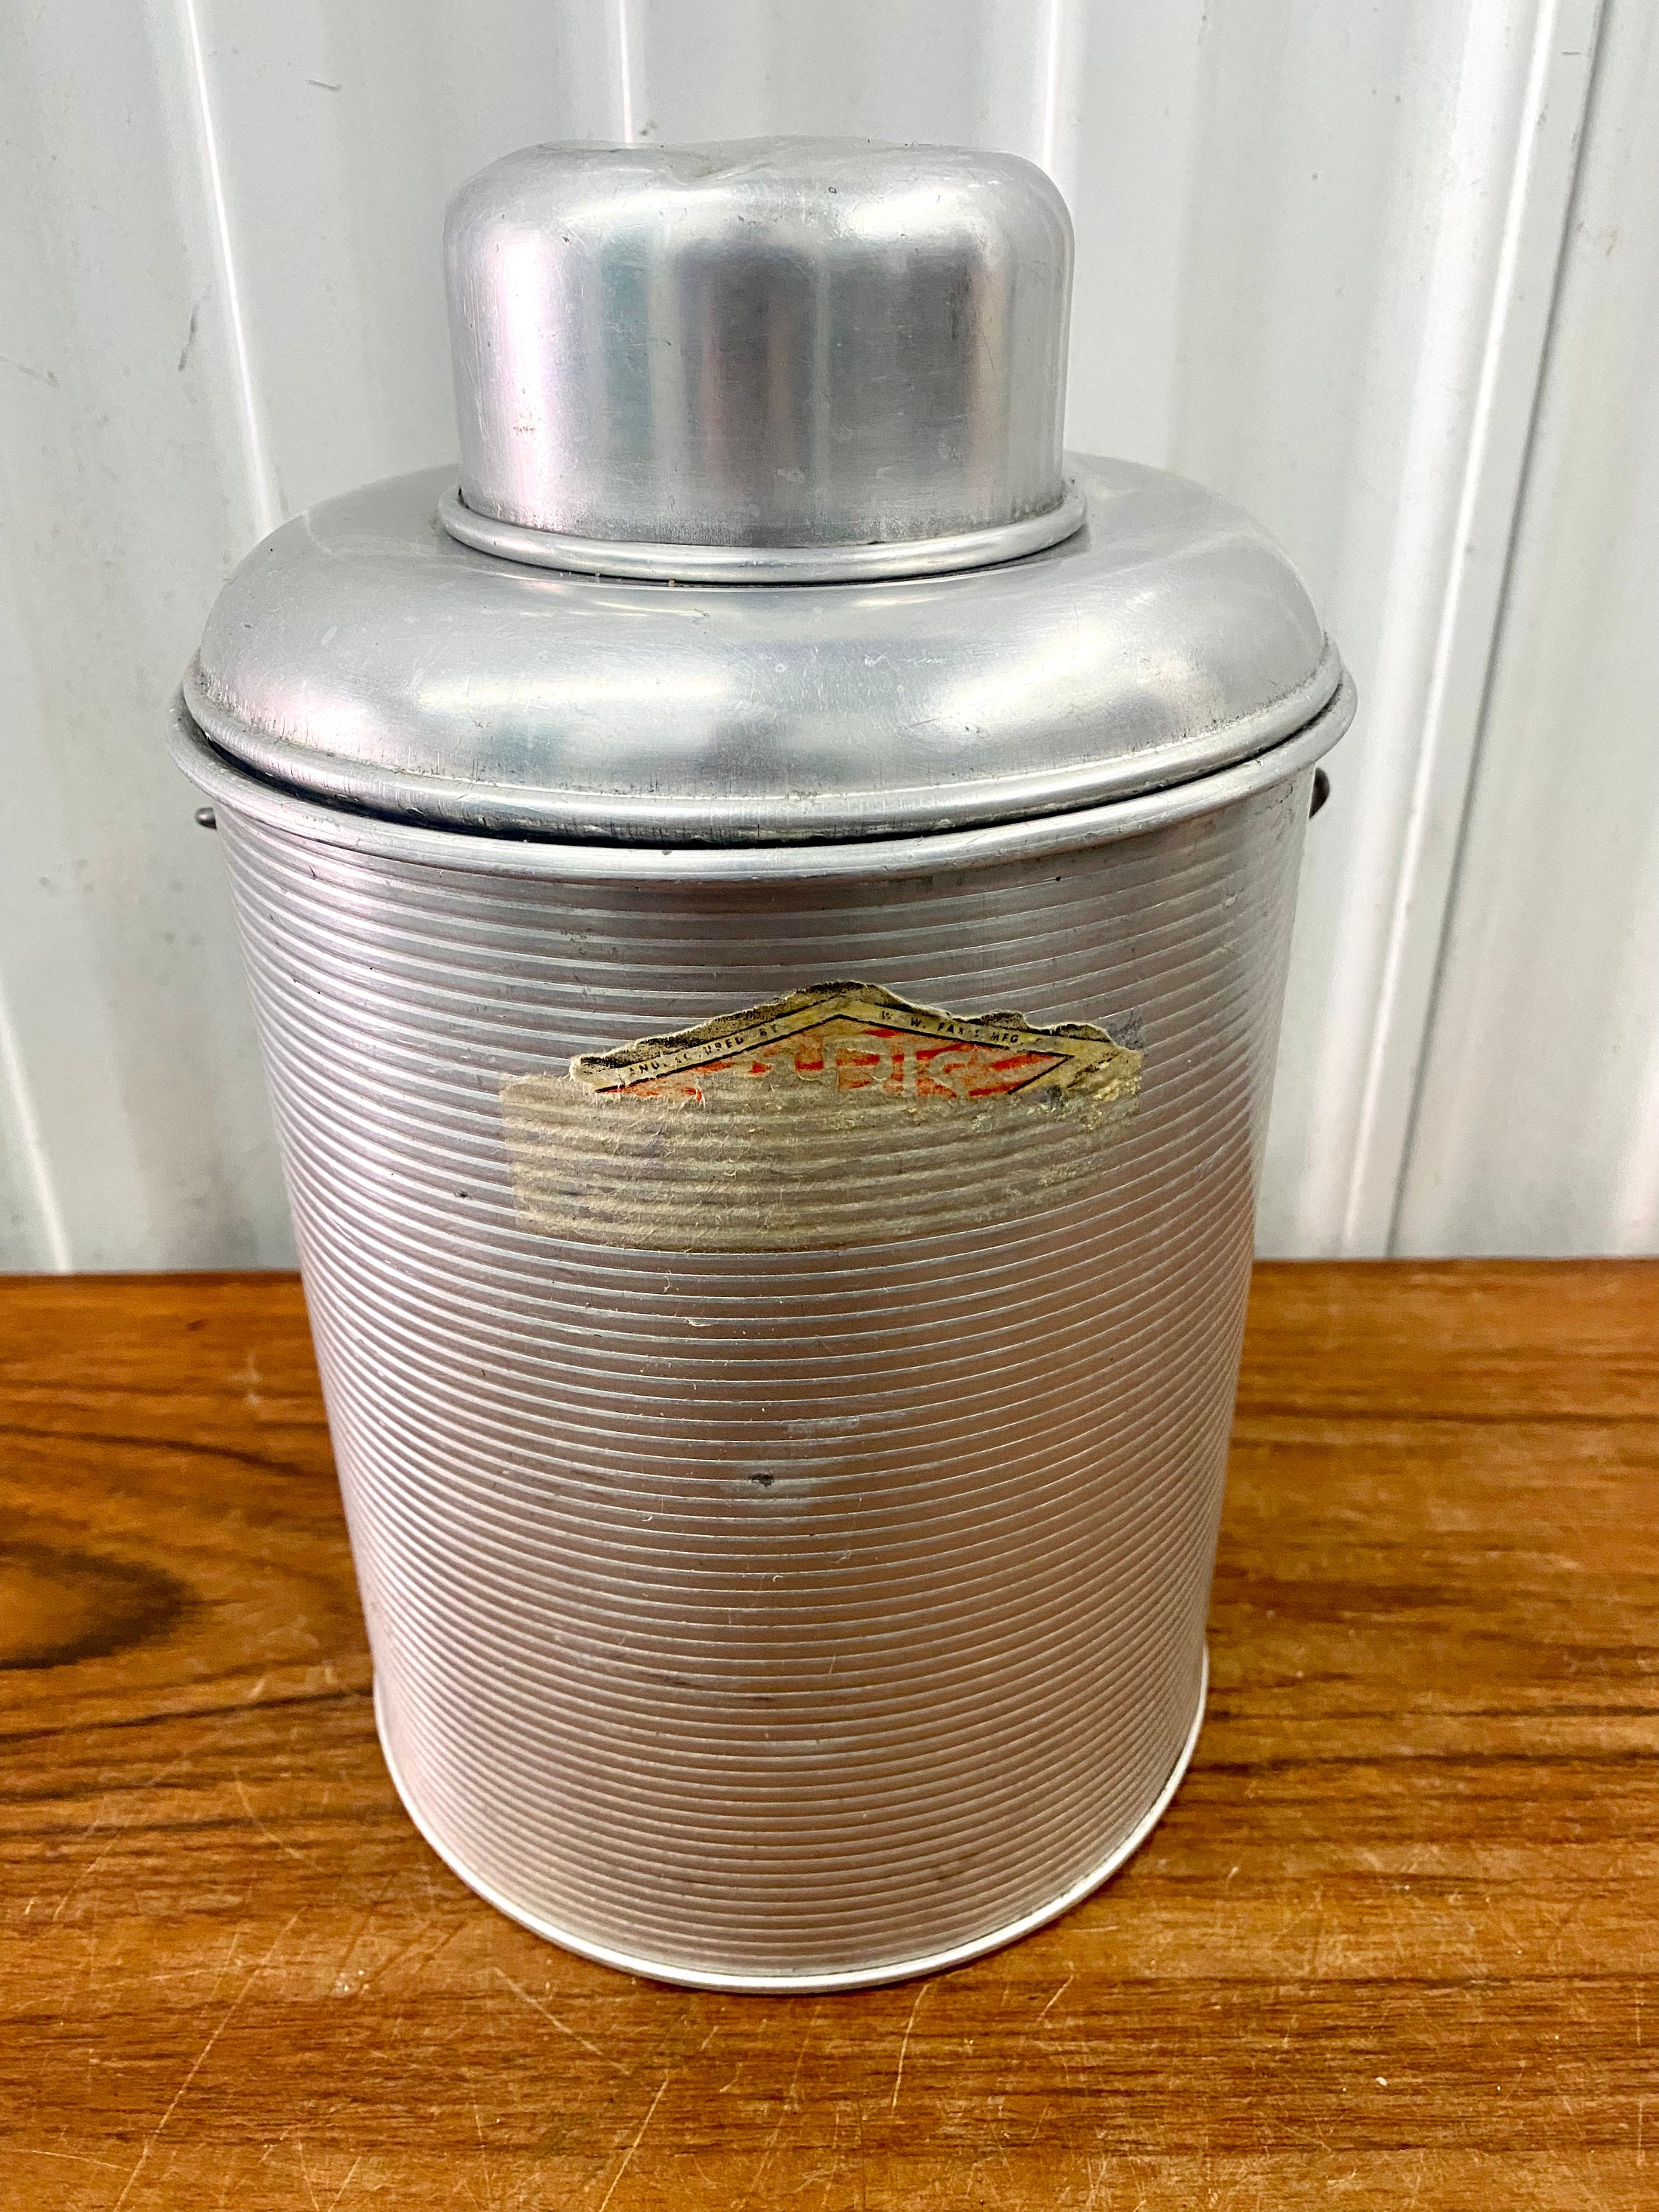 1940s Thermos Brand Vacuum Ware Thermos Carafe